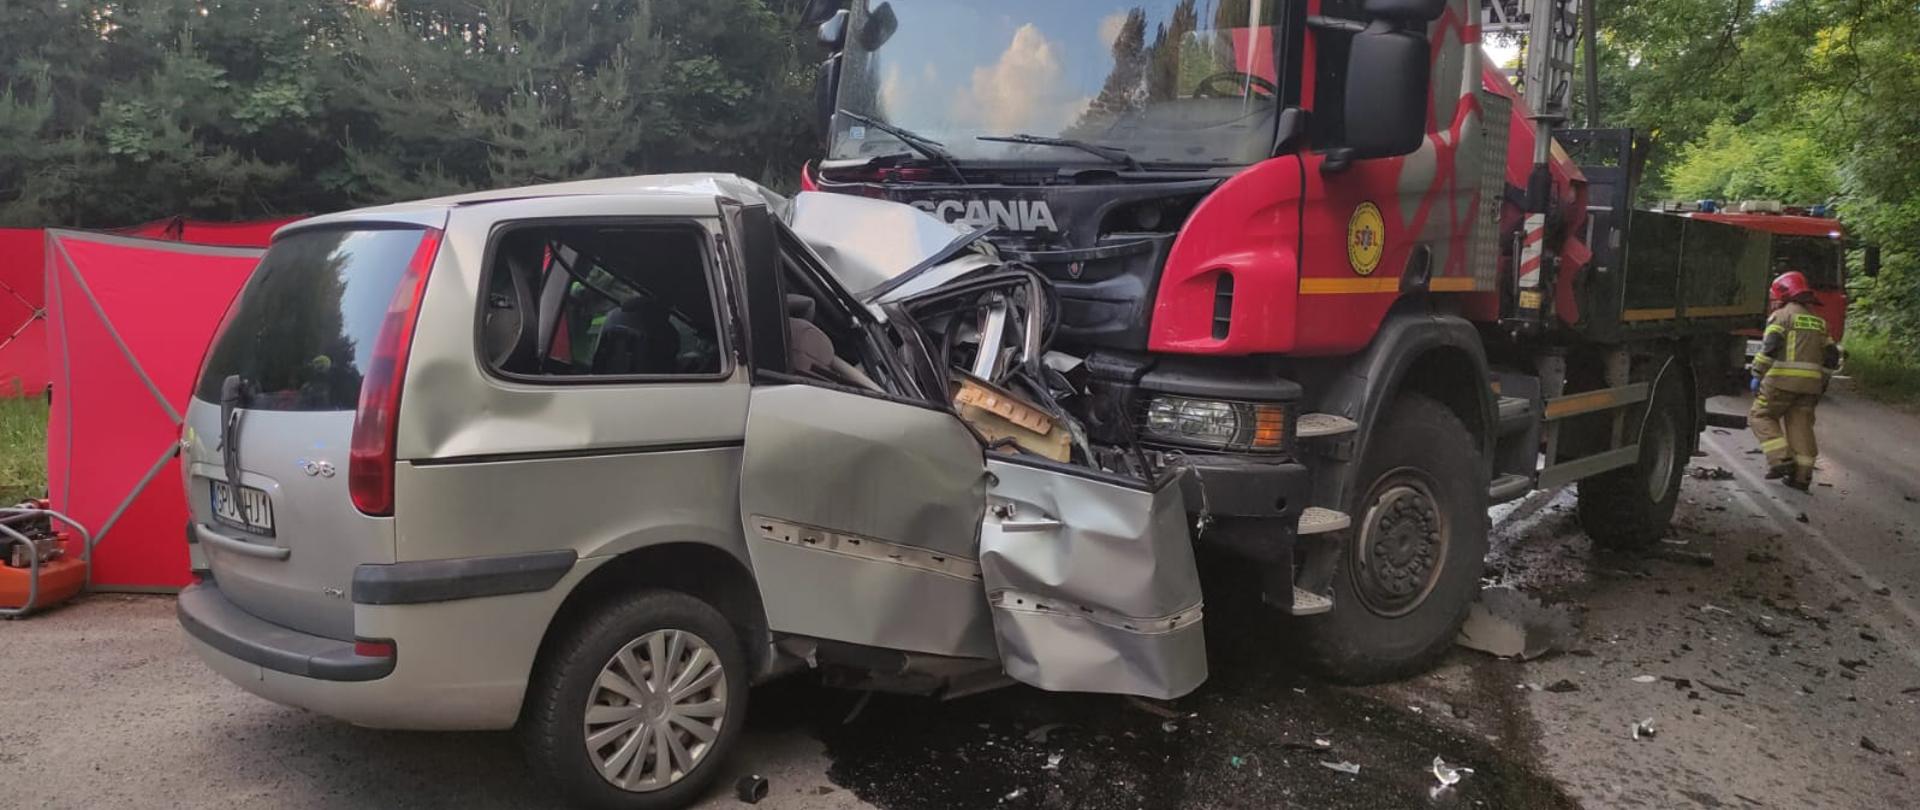 Na zdjęciu widoczny samochód osobowy (minivan) koloru srebrnego, który wbił się pod samochód ciężarowy. Przód samochody osobowego cały rozbity.. Spod samochodu wylały się płyny eksploatacyjne.